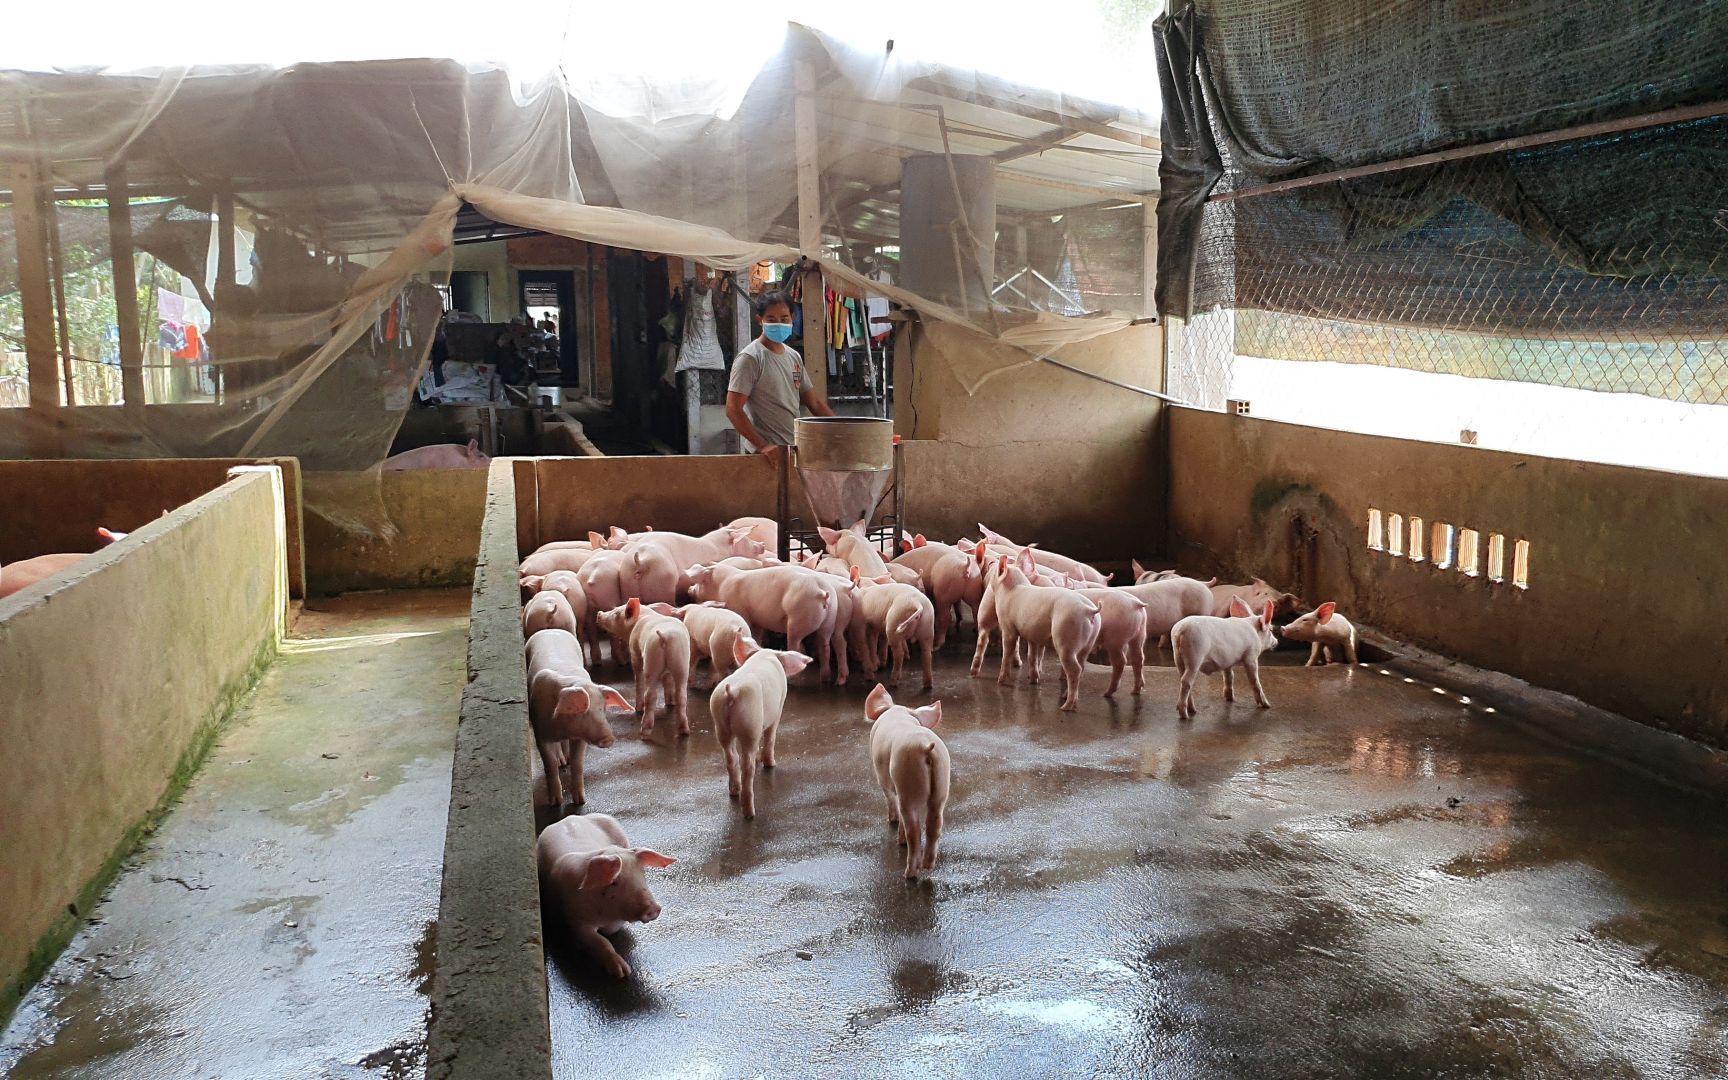 Tây Ninh: Nuôi heo, nhiều nhà đành treo chuồng vì giá thức ăn chăn nuôi cứ báo tăng liên tục